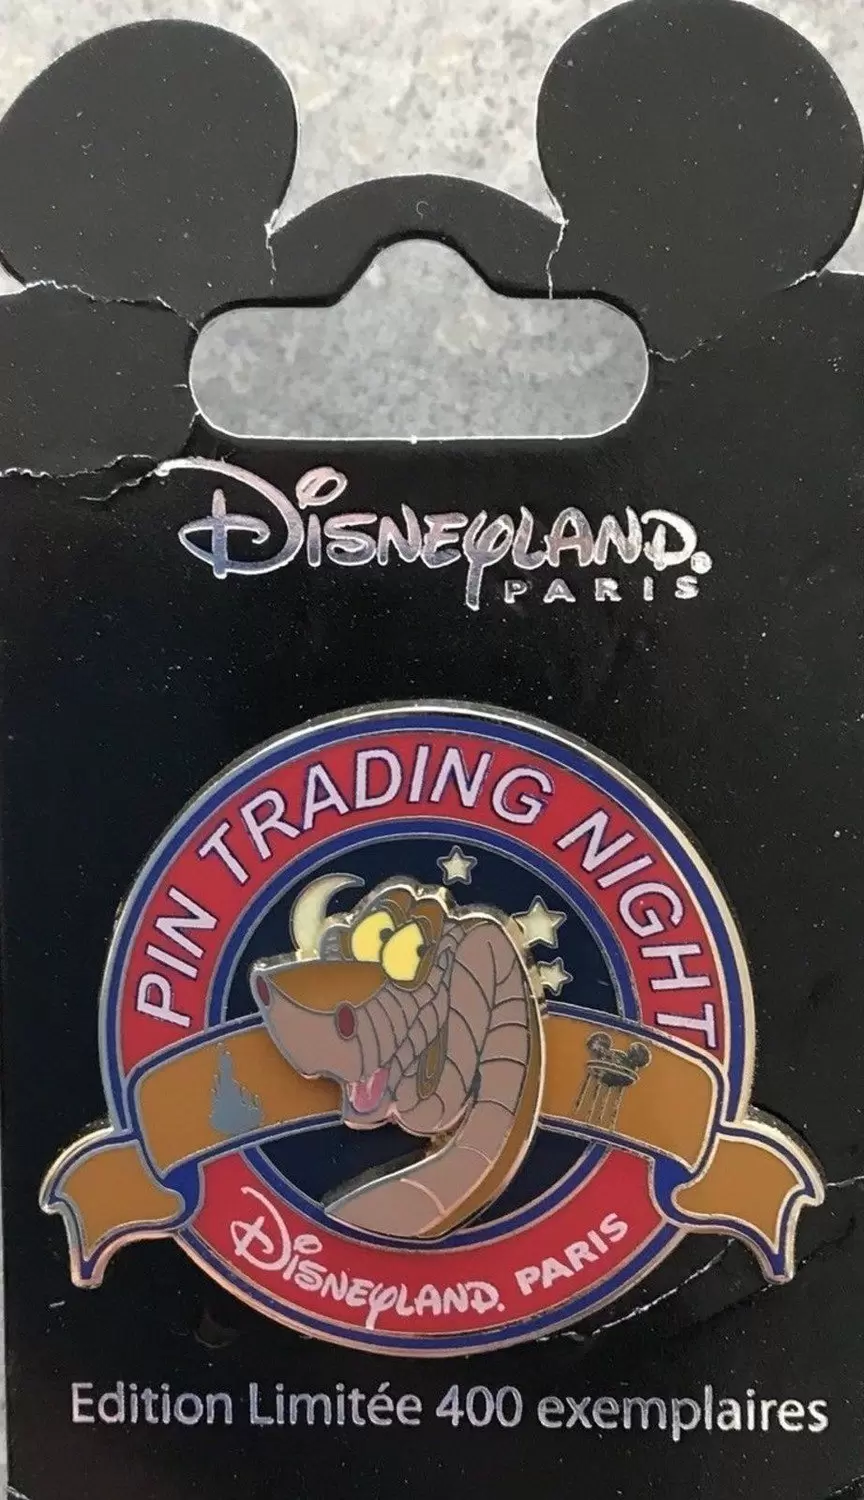 Disney - Pin Trading Night - Kaa